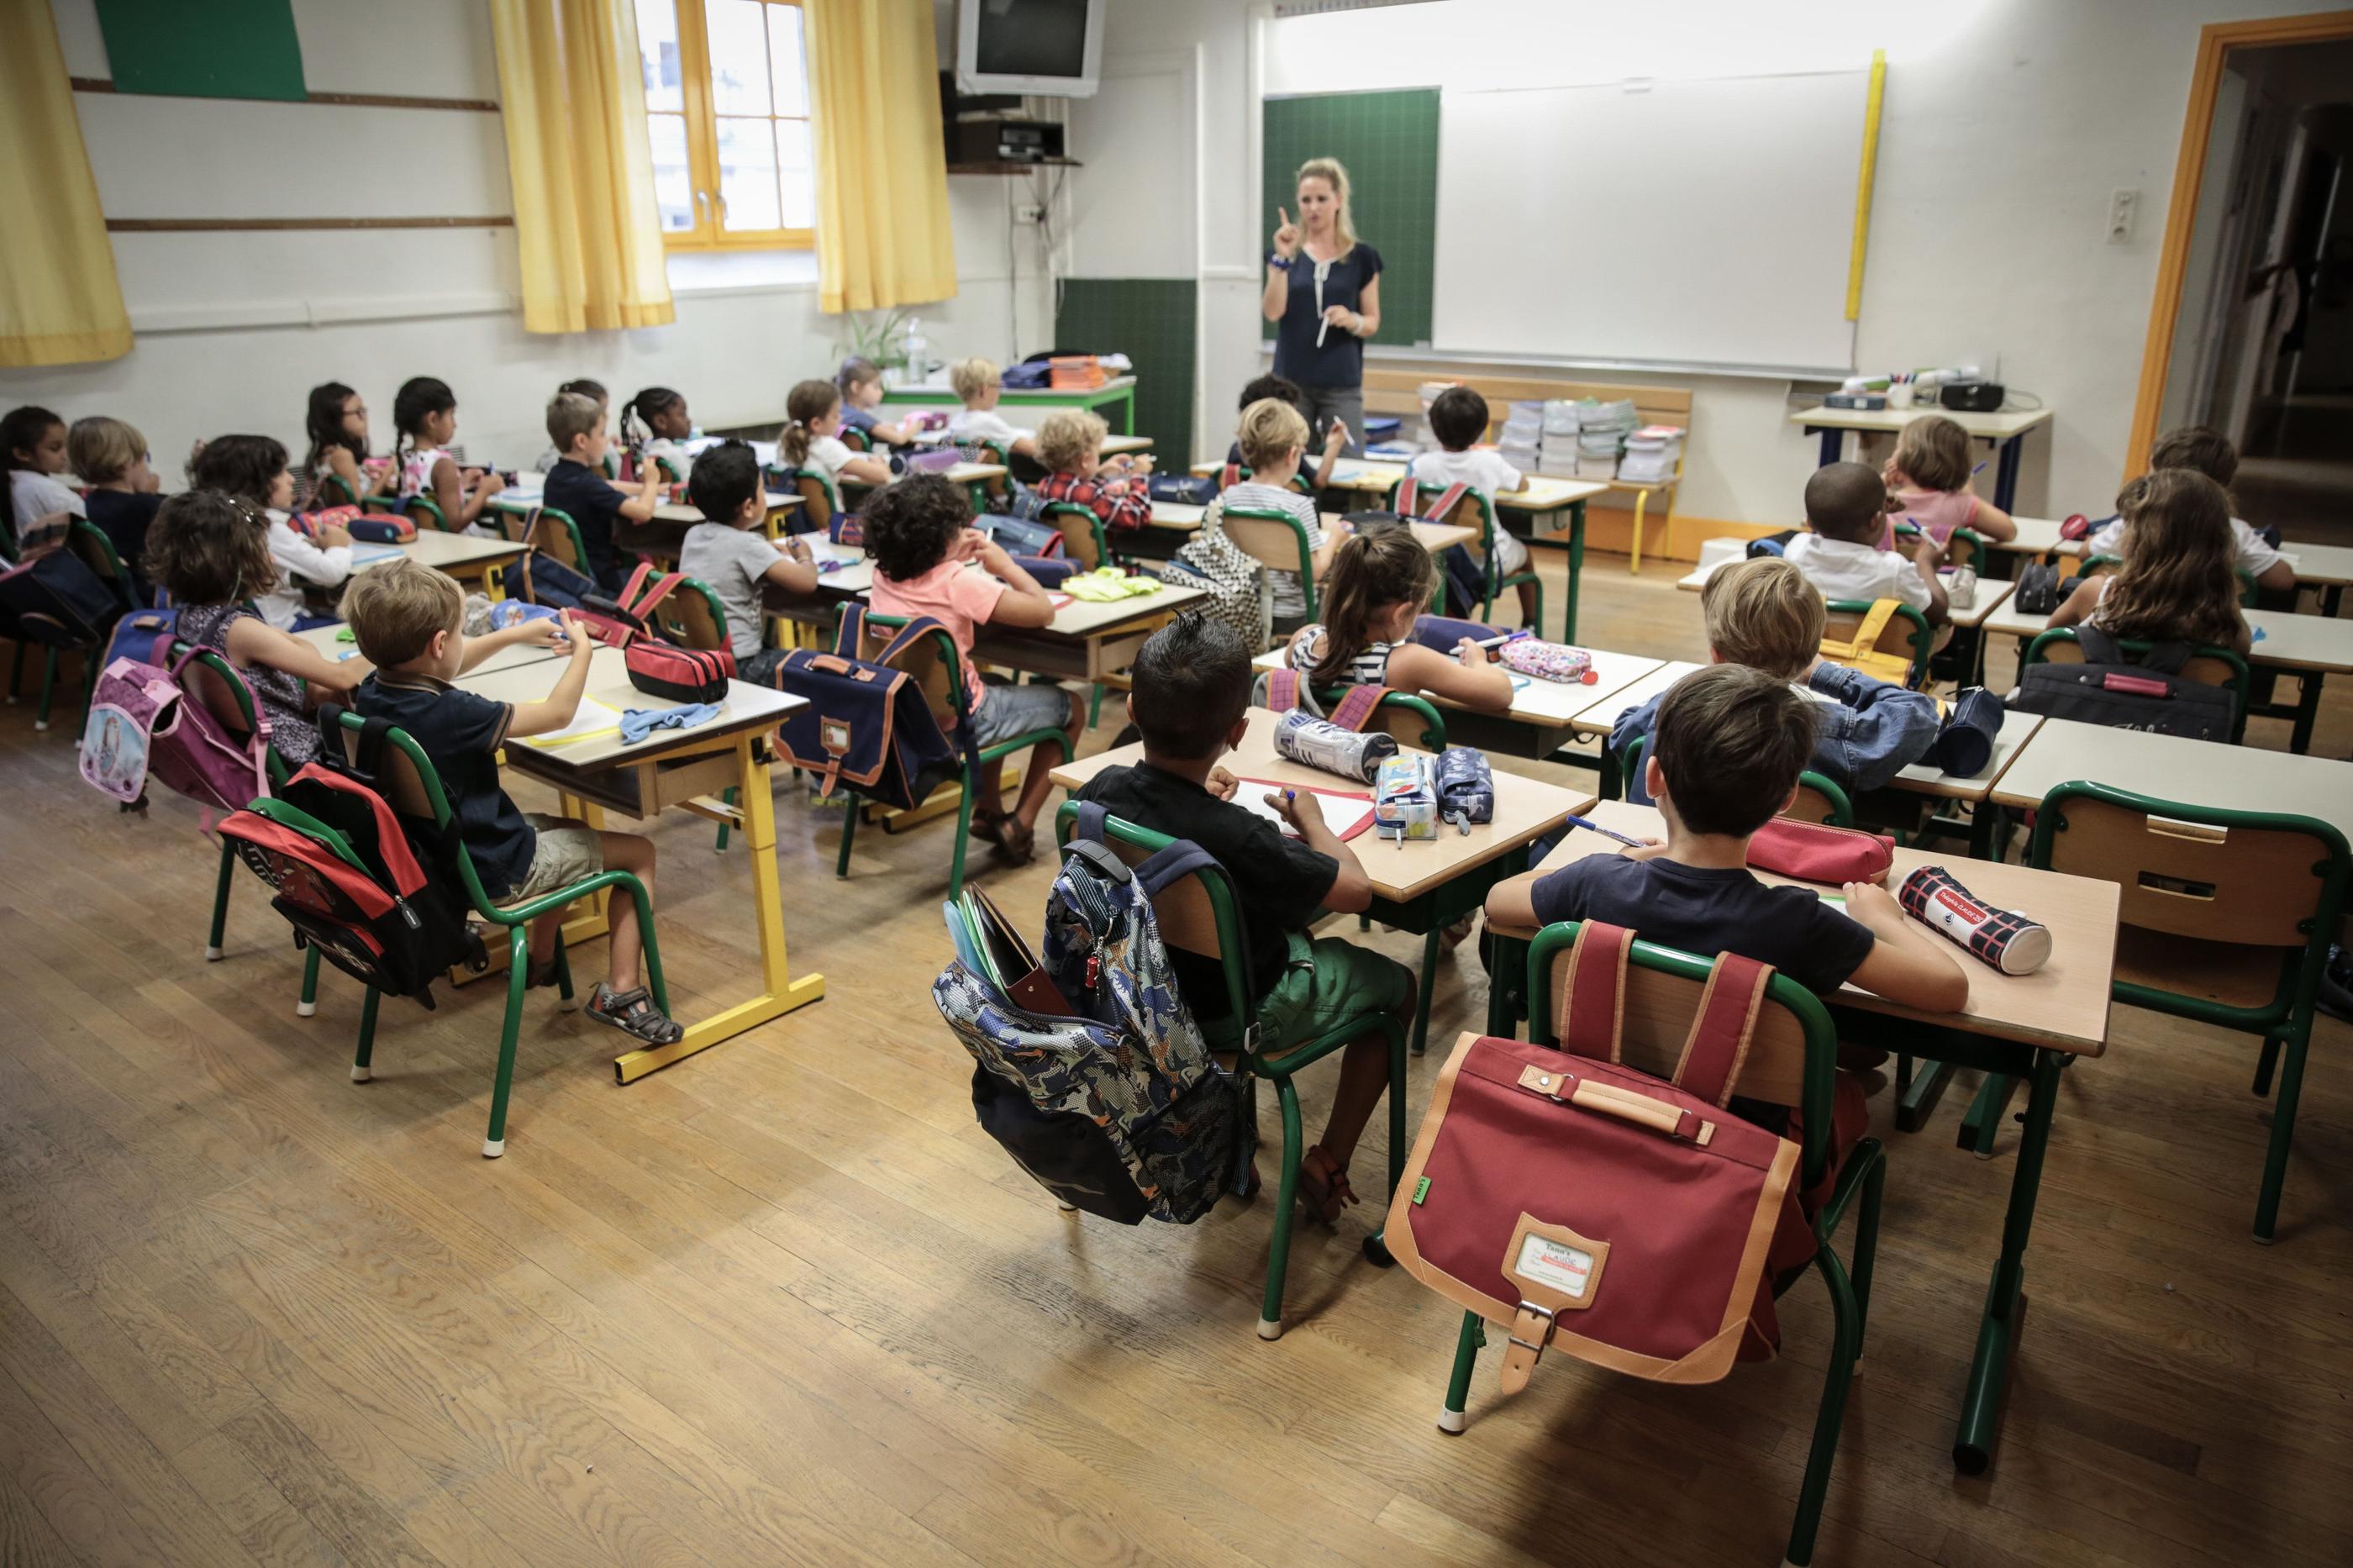 Le rectorat justifie la fermeture de classes par la baisse du nombre d’élèves à Paris. LP/Frédéric Dugit